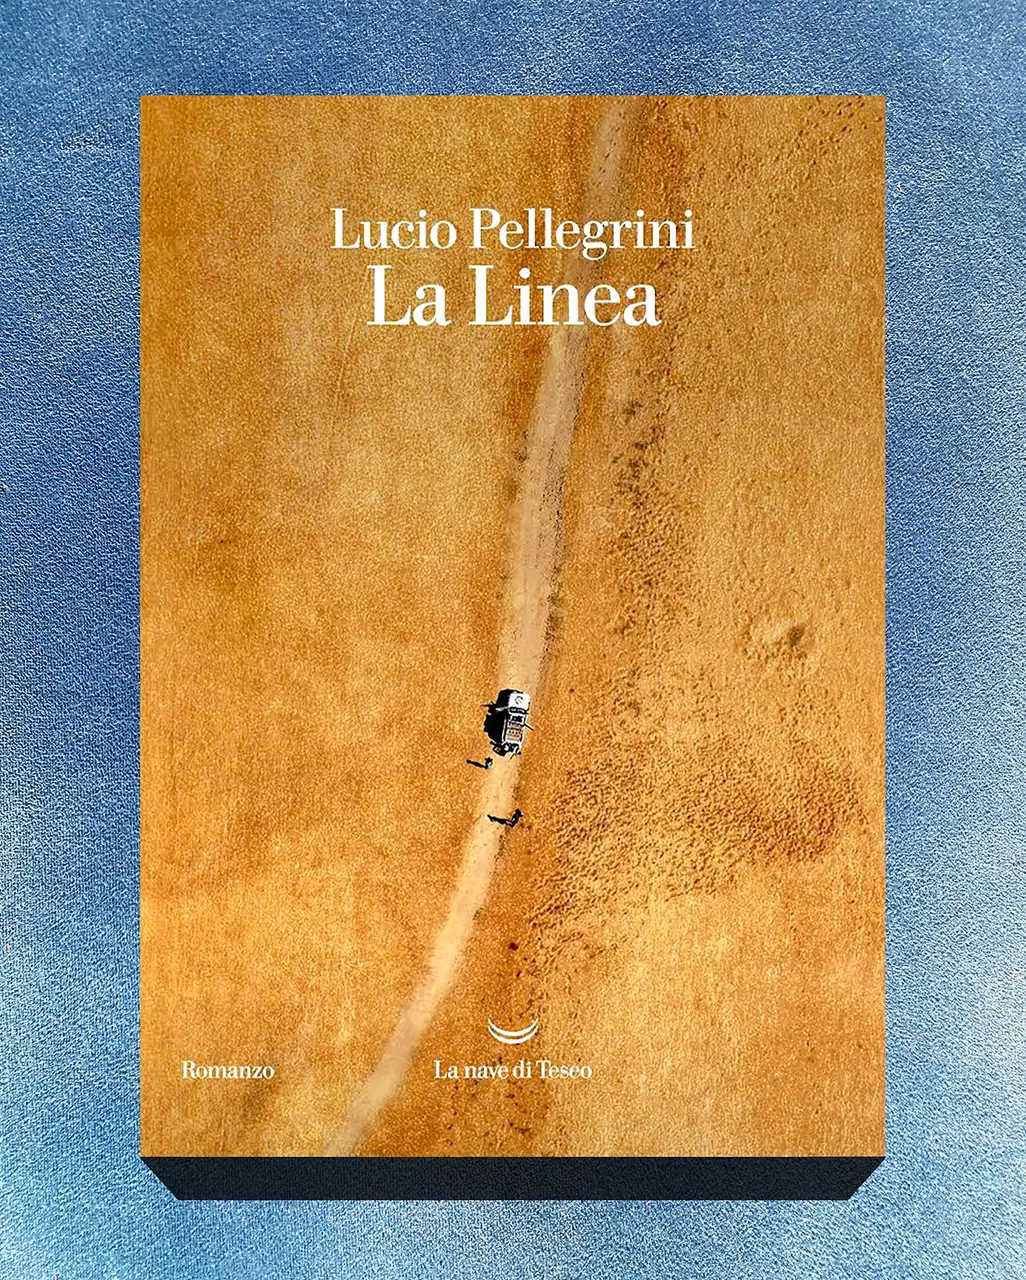 Lucio Pellegrini, La linea, cover book (2022).